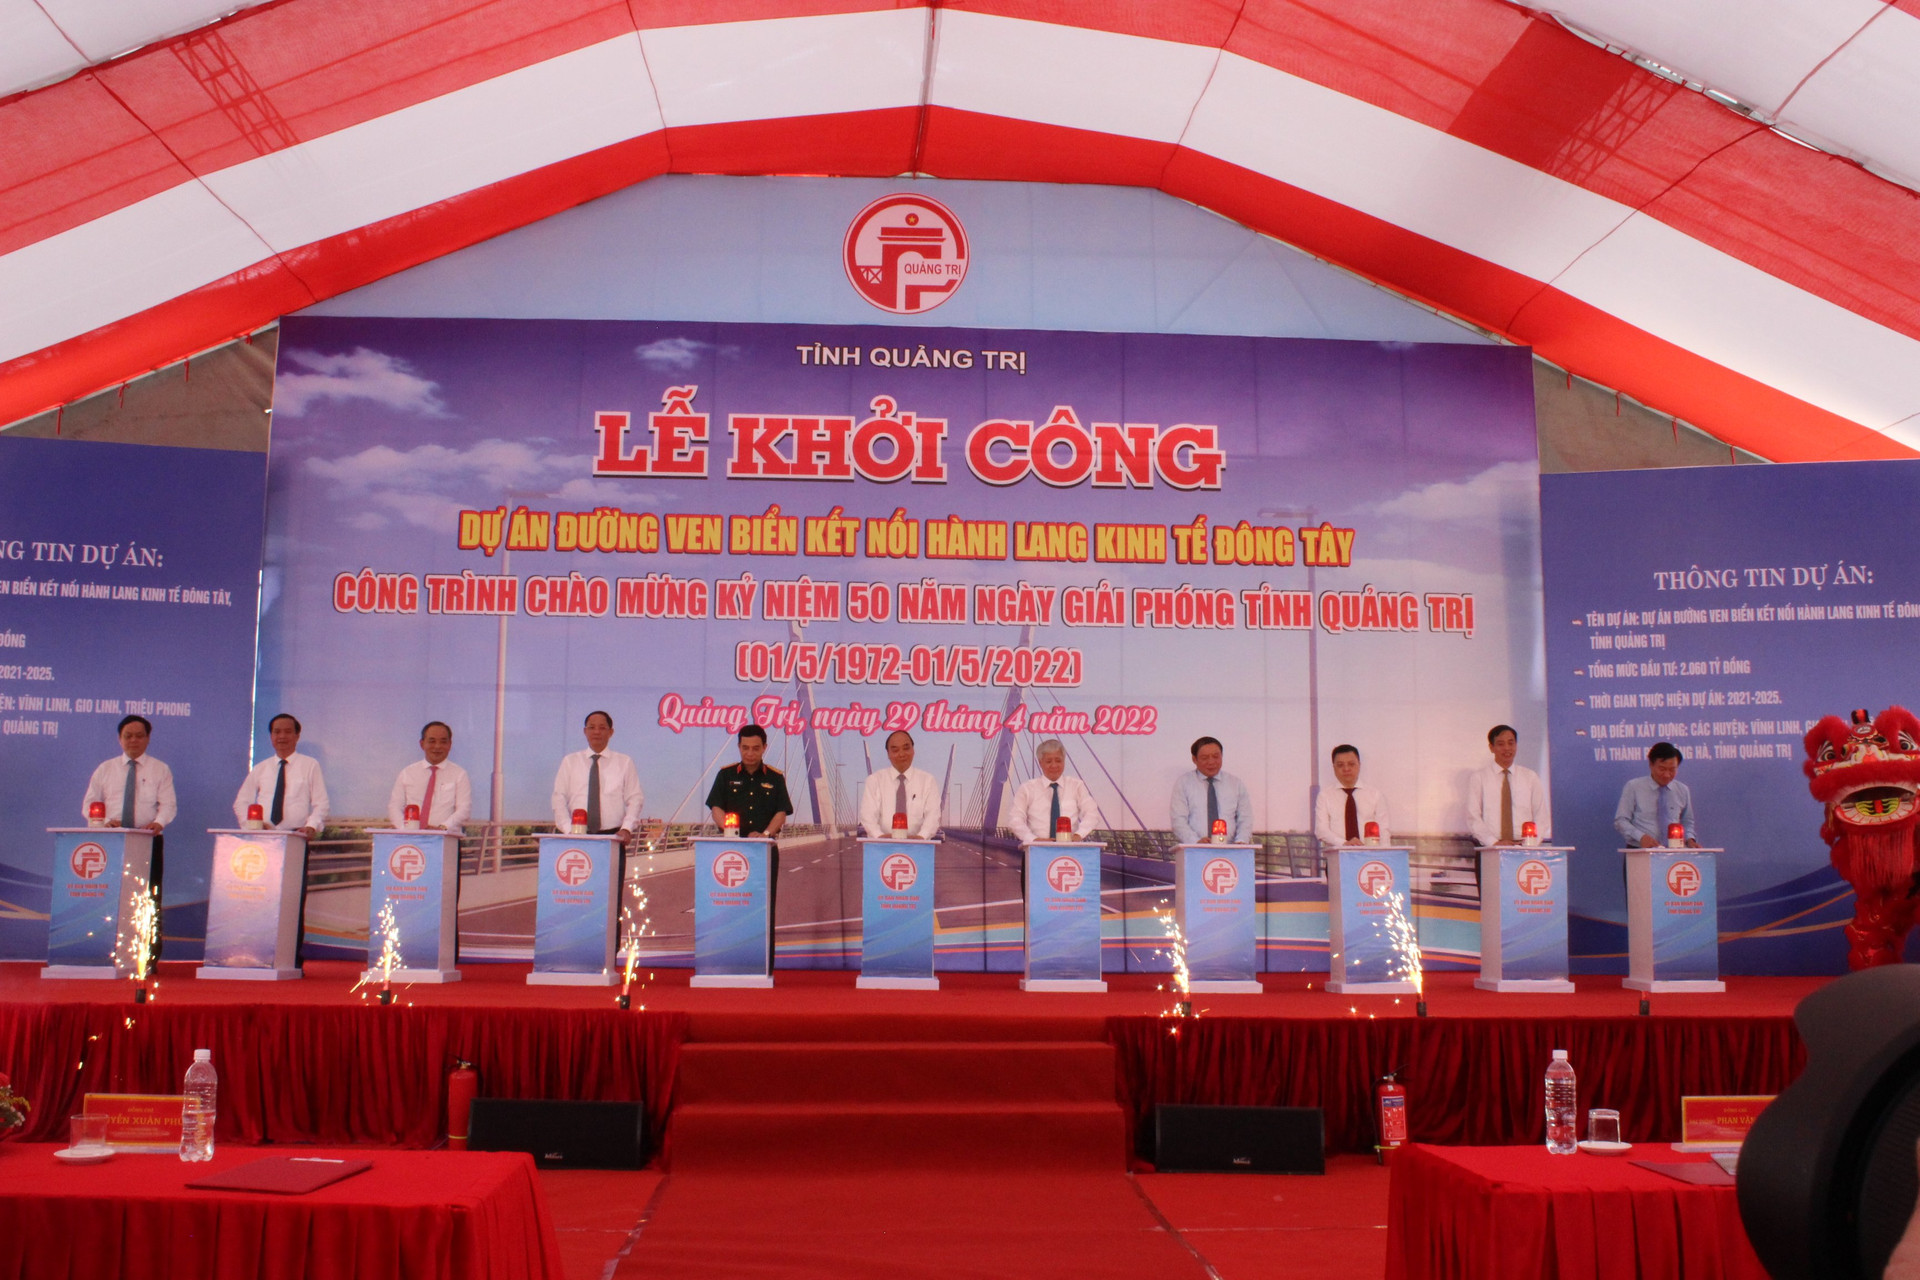 Dự án sẽ góp phần quan trọng cho những đổi thay trong cơ cấu kinh tế xã hội tỉnh Quảng Trị trong nhiều năm tới.